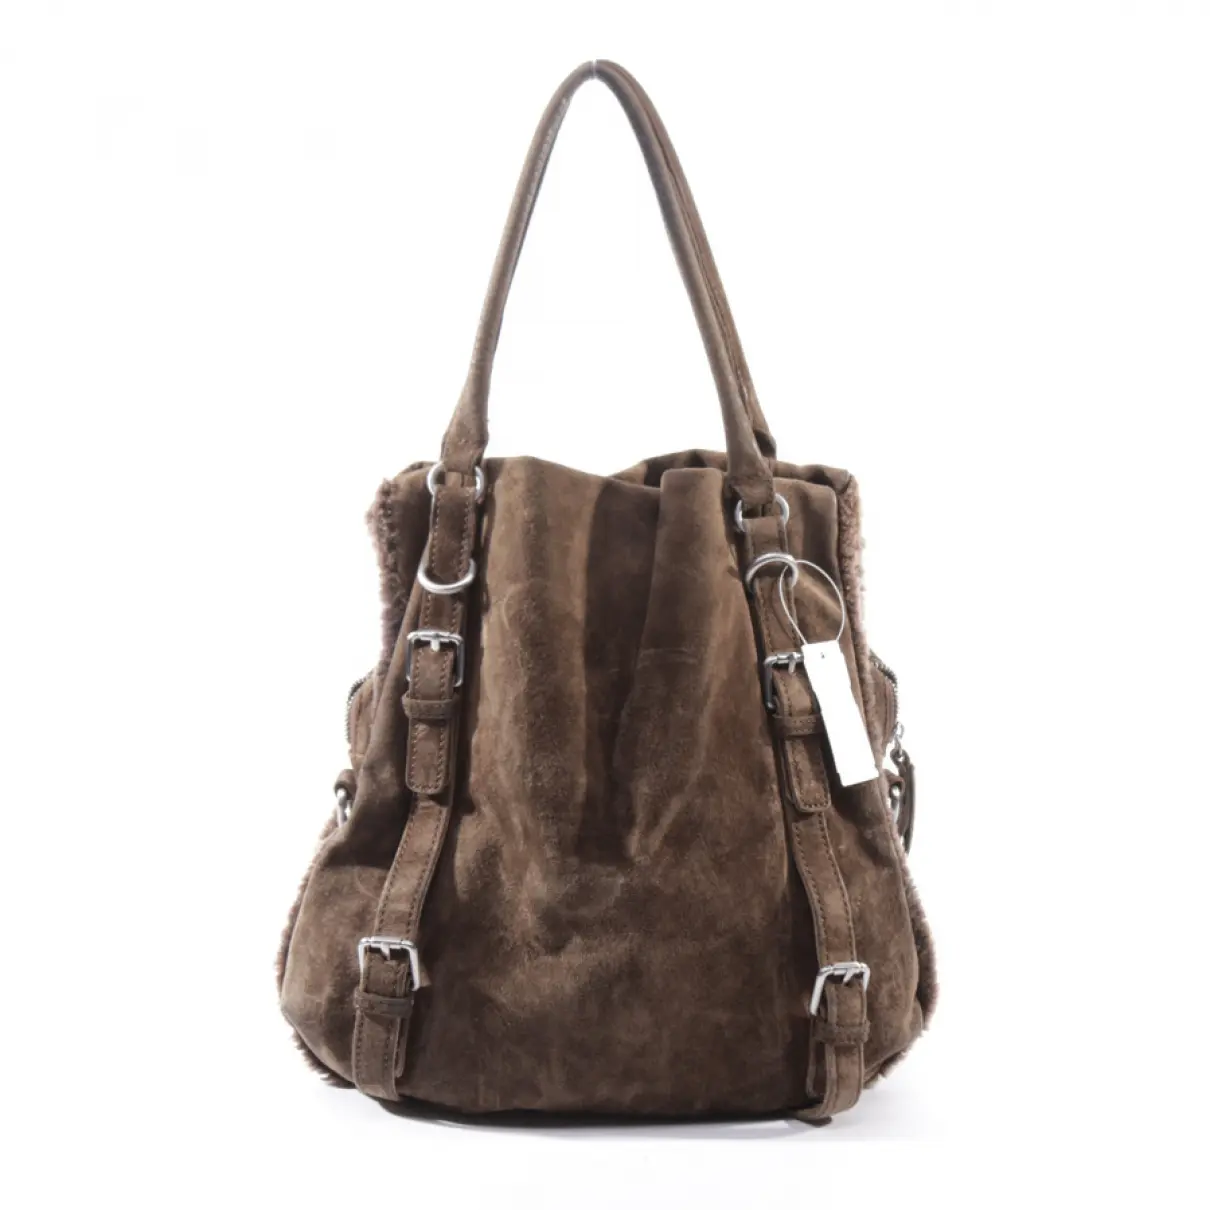 Buy LIEBESKIND Leather bag online